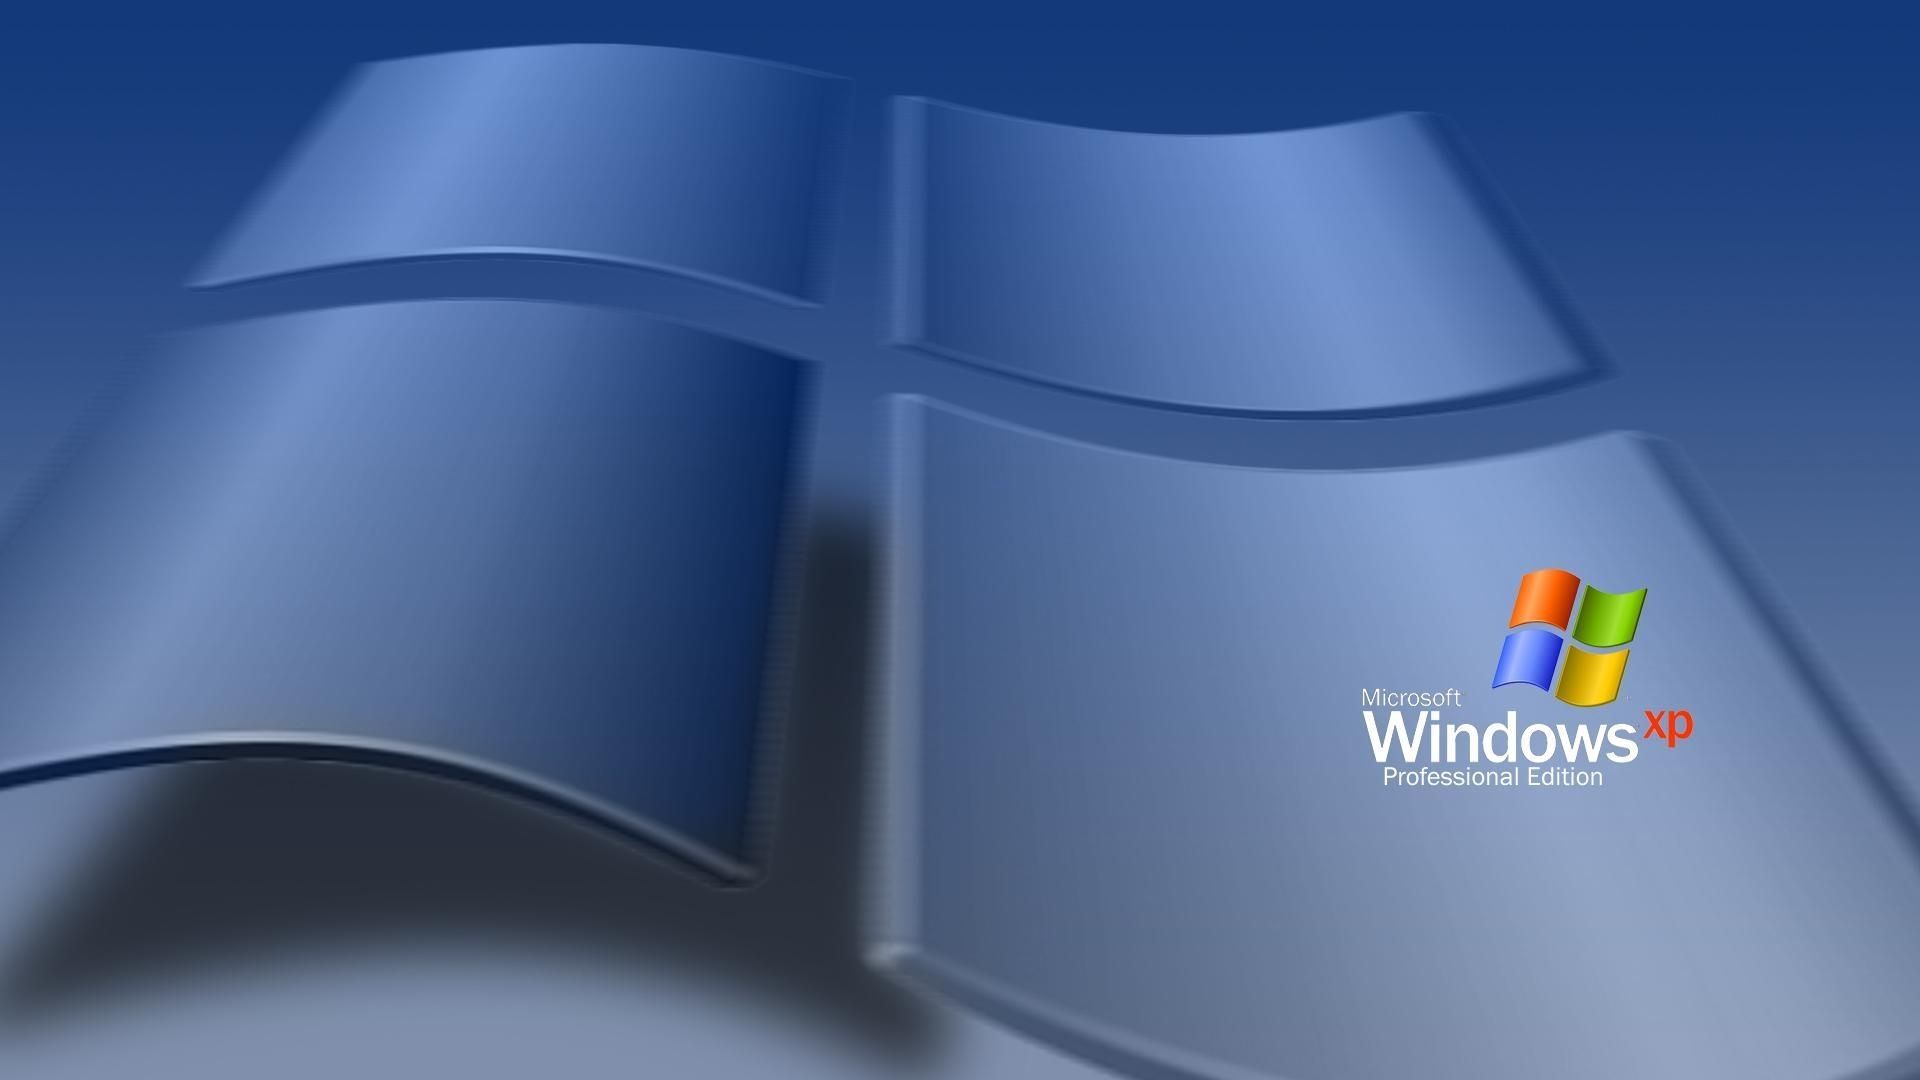 Hình nền Windows XP trên WallpaperDog sẽ khiến bạn phải ngỡ ngàng với những hình ảnh tuyệt đẹp và đa dạng. Từ phong cảnh đến những chủ đề khác nhau, bạn có thể tìm thấy hình nền cho máy tính của mình trên trang web này. Bấm vào đây và khám phá những hình nền độc đáo mà bạn không thể tìm thấy ở bất kì nơi đâu khác.